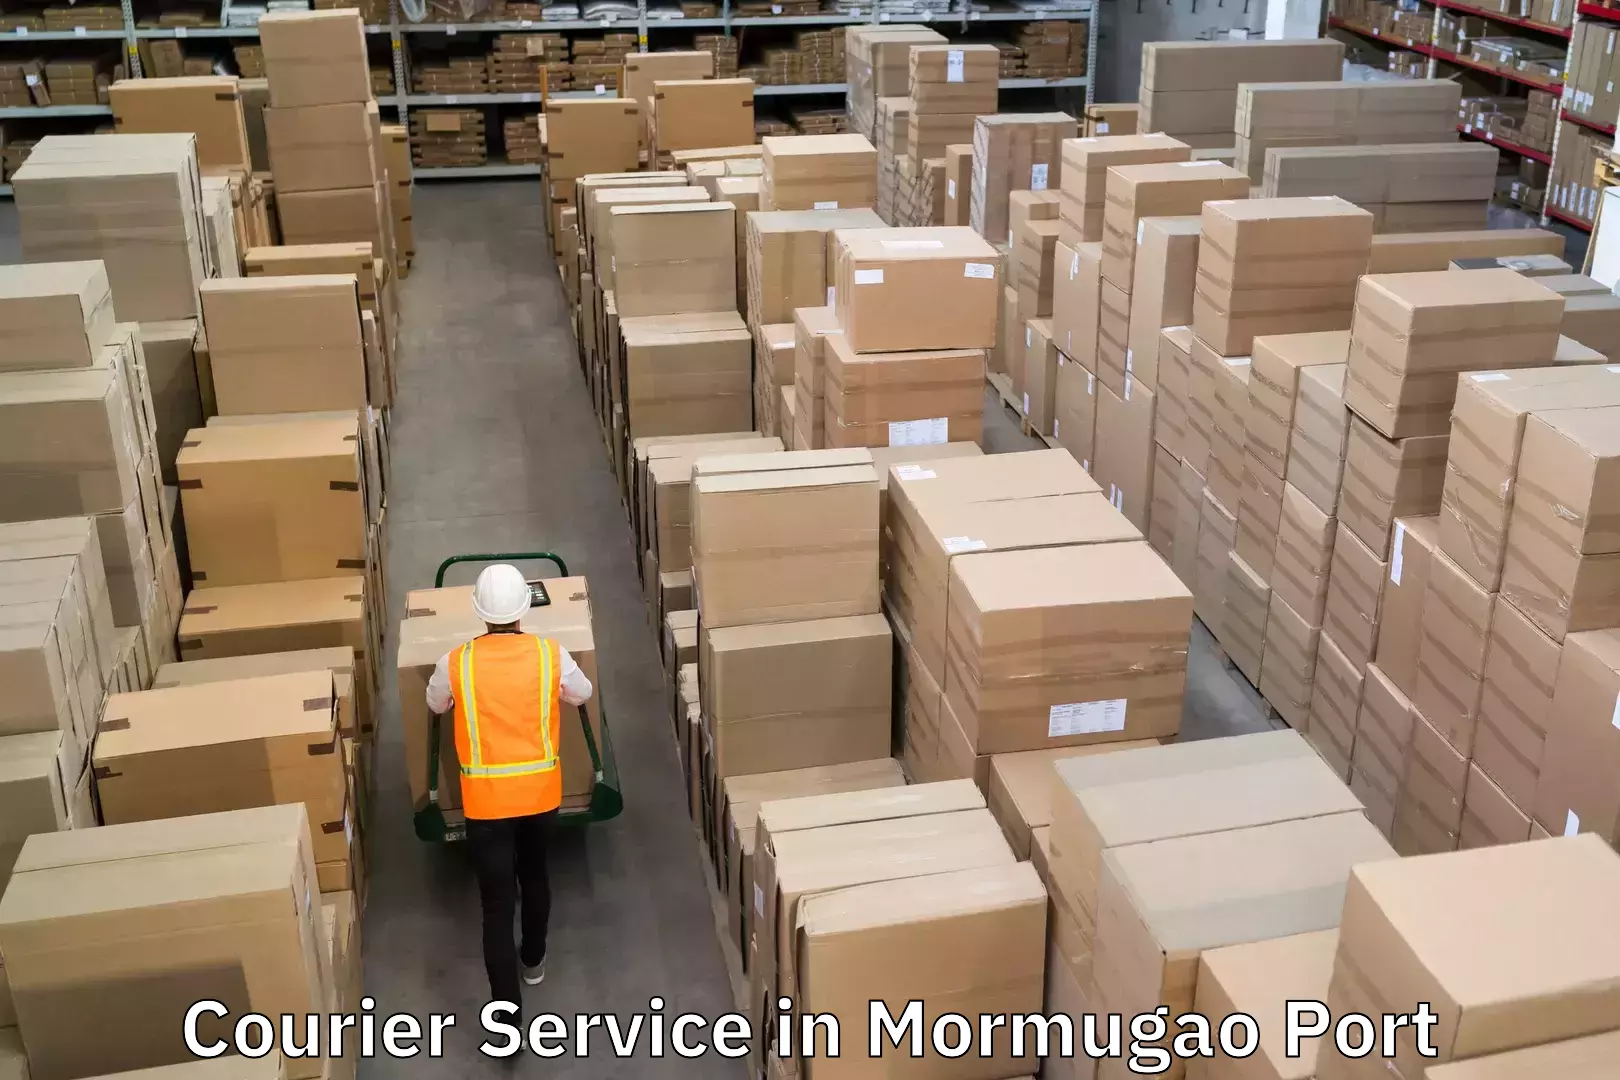 Efficient logistics management in Mormugao Port